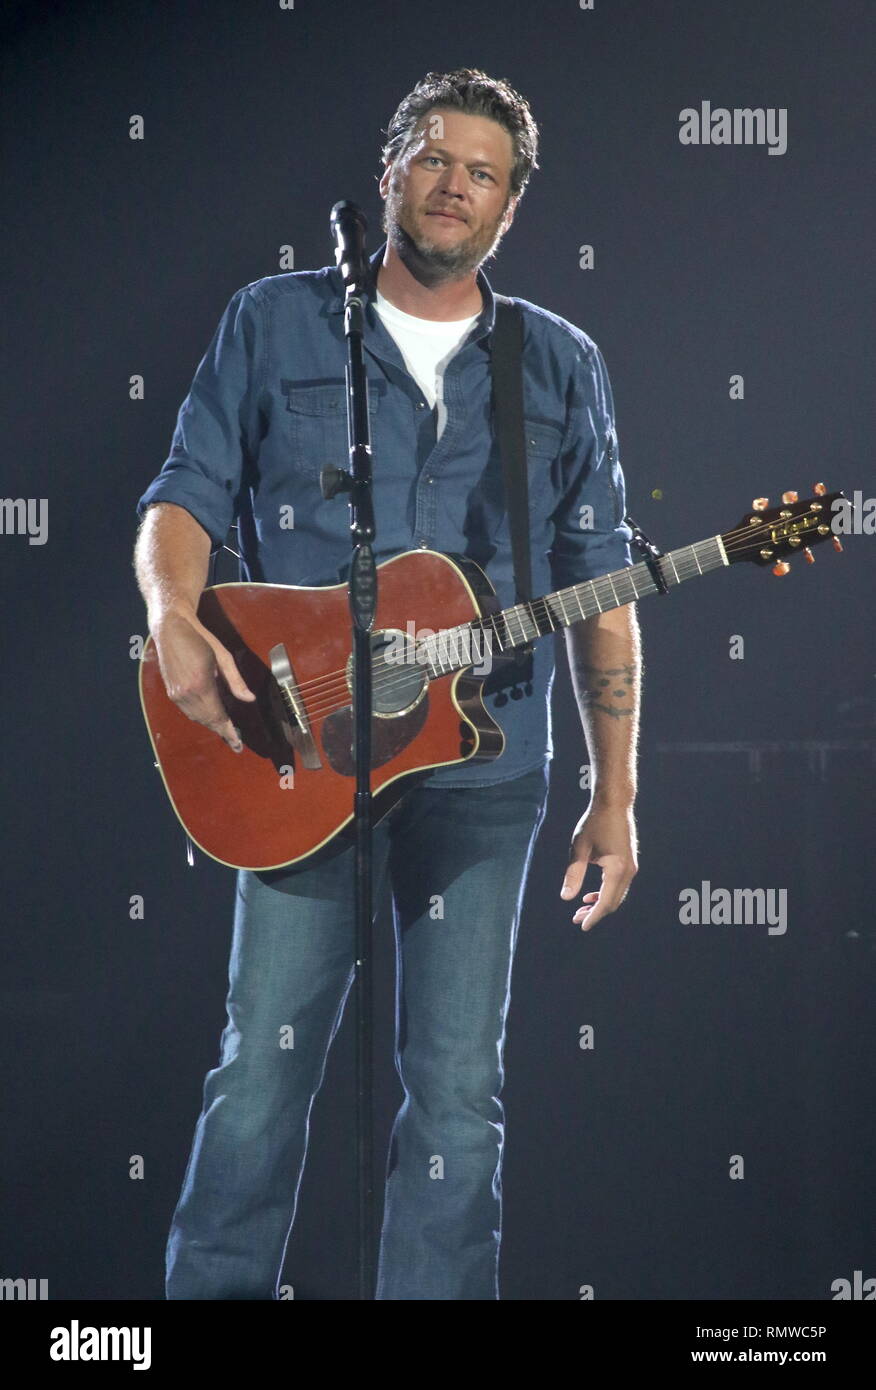 Musicista Blake Shelton è mostrato esibirsi sul palco durante un 'live' aspetto di concerto. Foto Stock